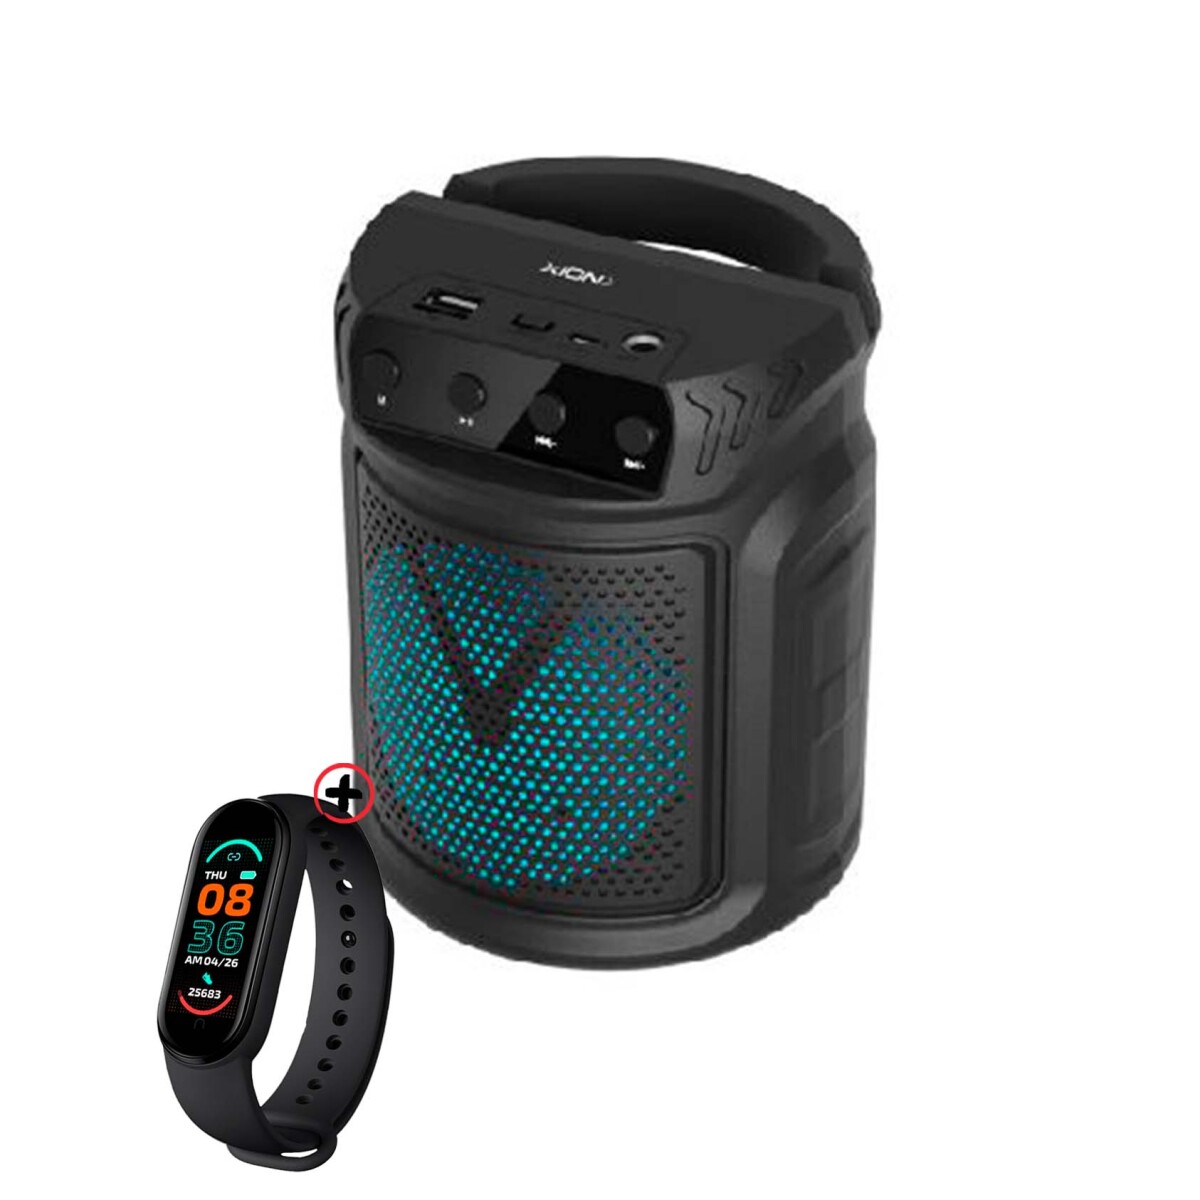 Parlante Bluetooth Batería Recargable Xion Xi-sd75 C/ Radio + Smartwatch 